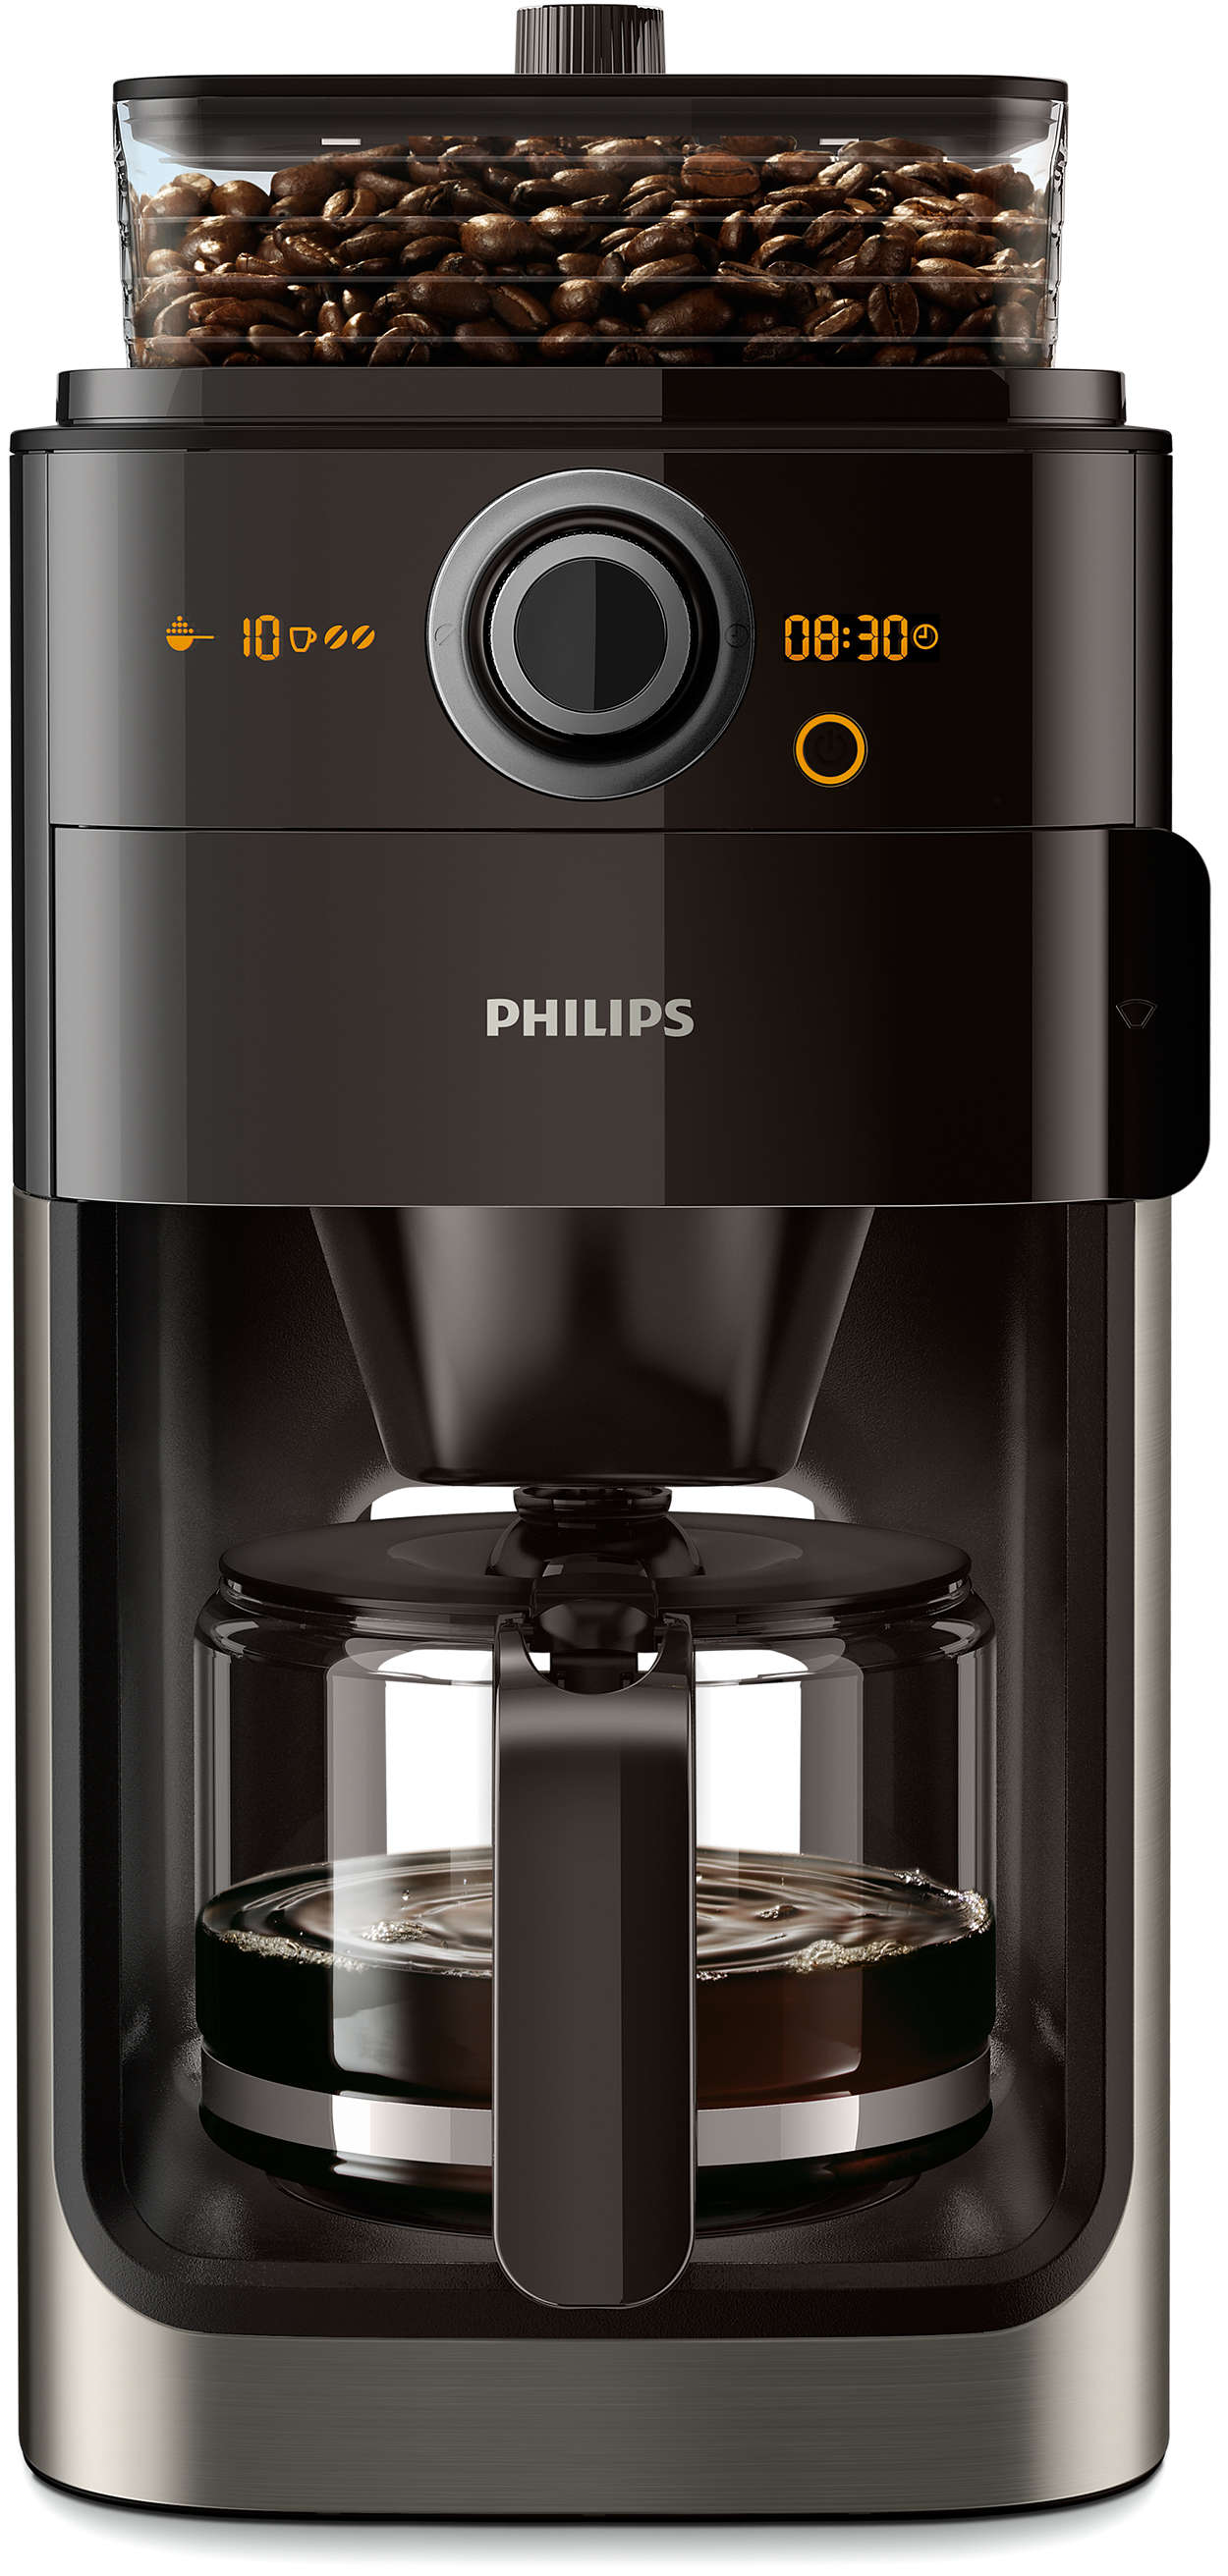 Philips grind brew. Кофеварка Philips hd7767. Кофемашина Philips Grind & Brew hd7767/00. Кофеварка капельная Philips hd7767. Кофеварка Philips hd7767, капельная, черный / стальной.